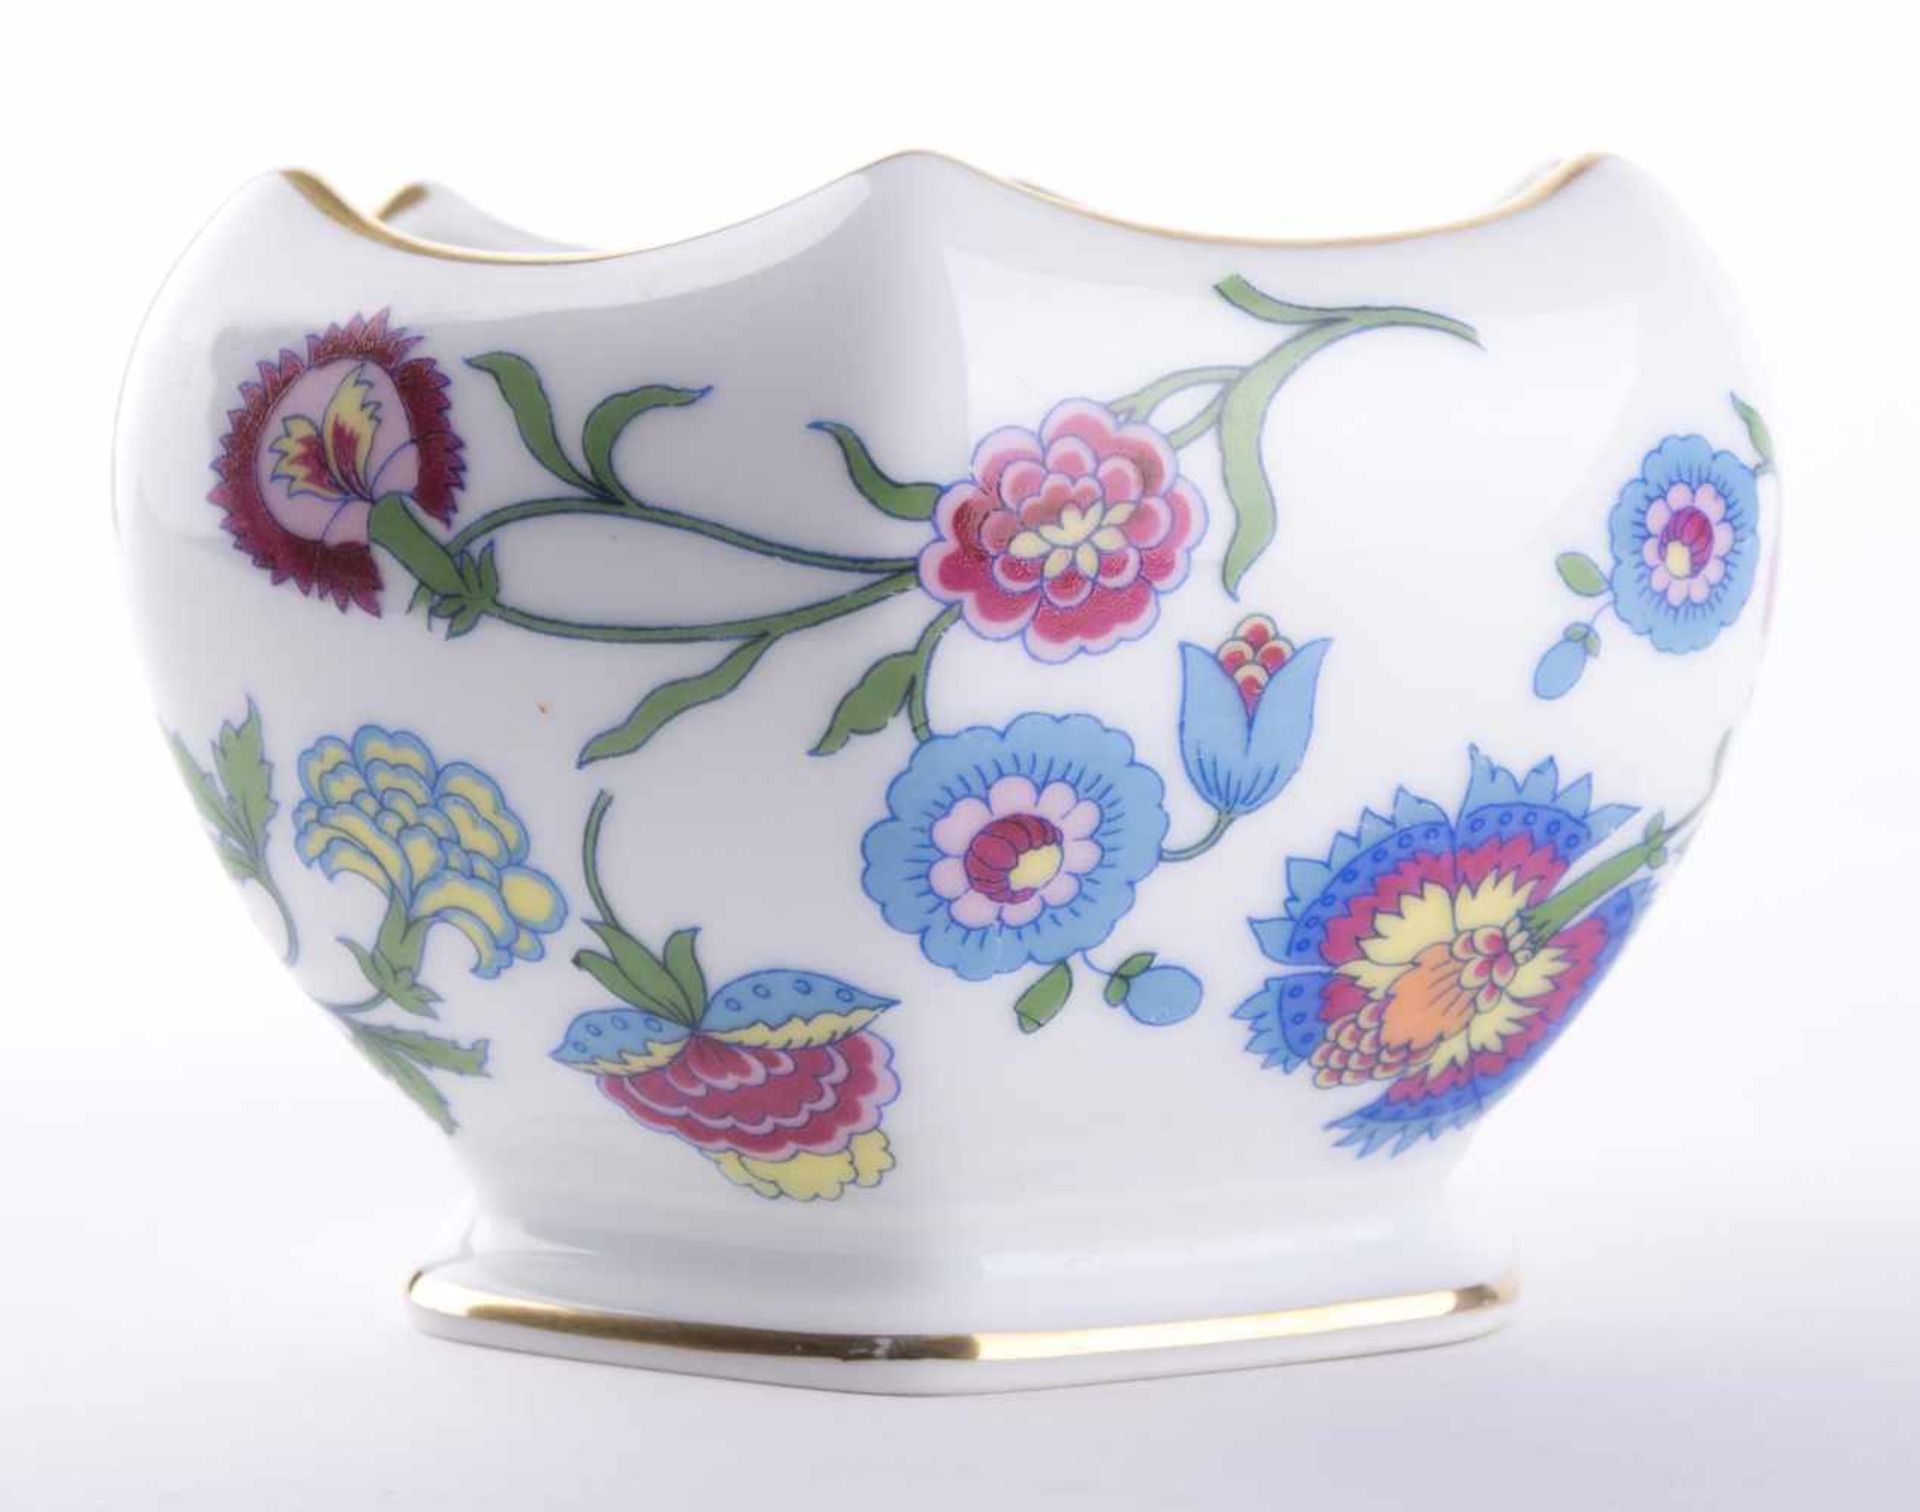 Schale Rosenthal / Bowl, Rosenthal umlaufend polychrom mit Blüten- und Vogeldekor bemalt, - Bild 3 aus 9